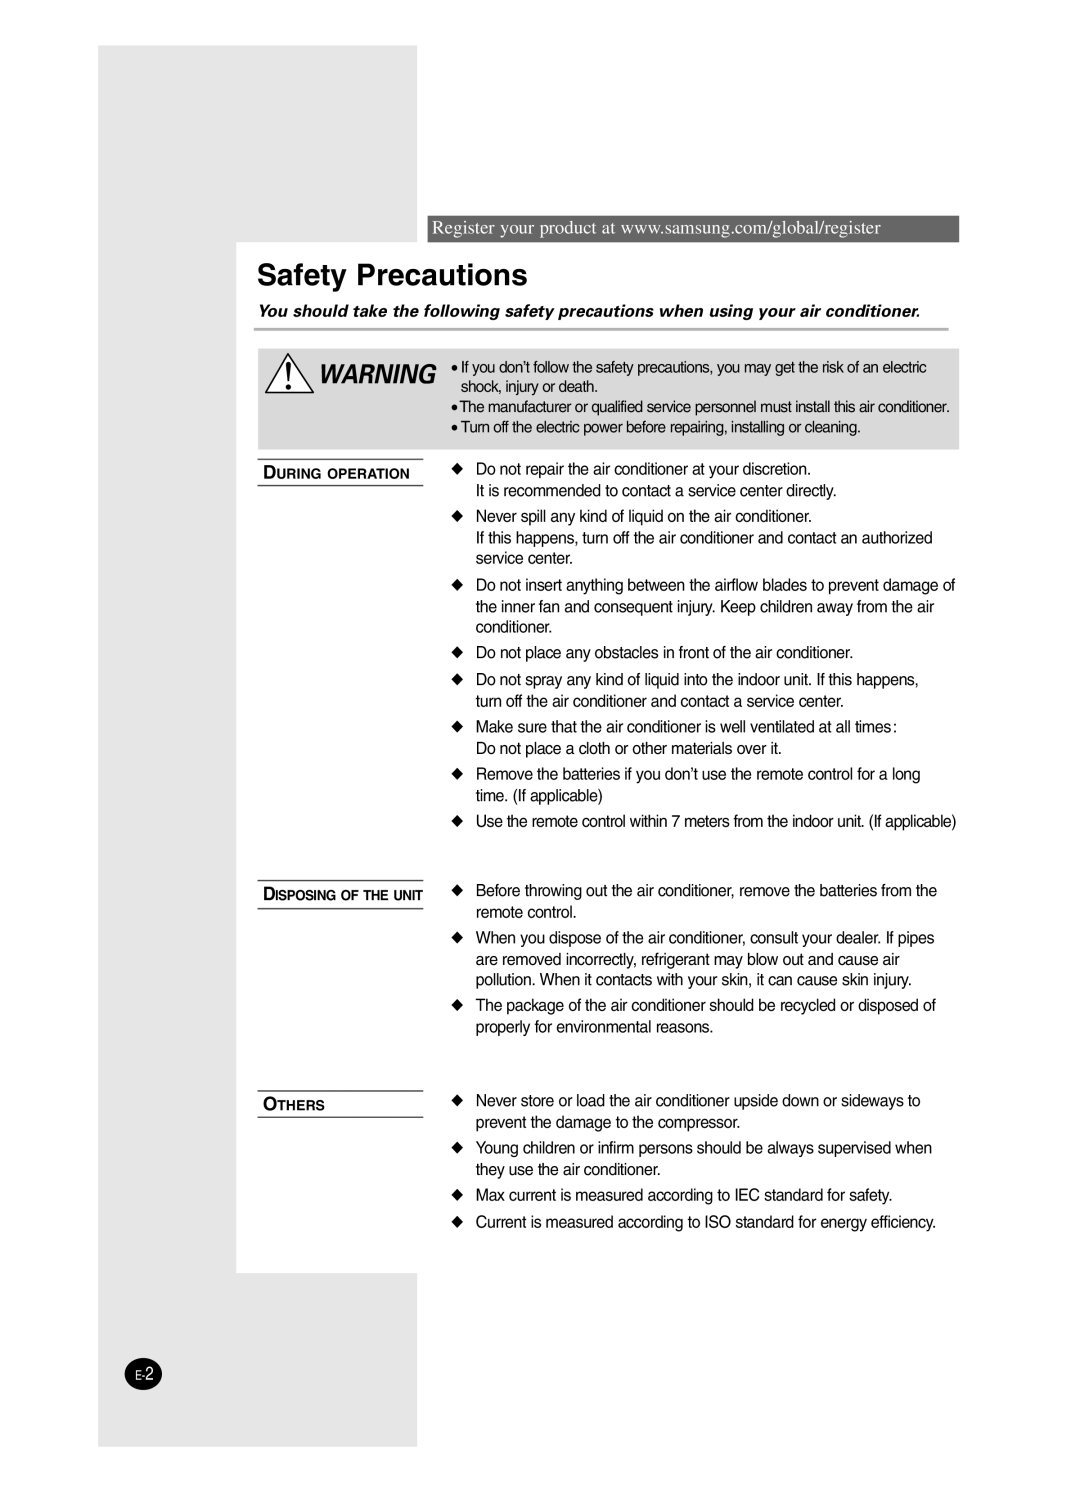 Samsung AS24BPAN, AS09BPAN, AS24BPAX, AS12BPAX, AS12BPAN, AS09BPAX, AS18BPAN, AS18BPAX manual Safety Precautions 